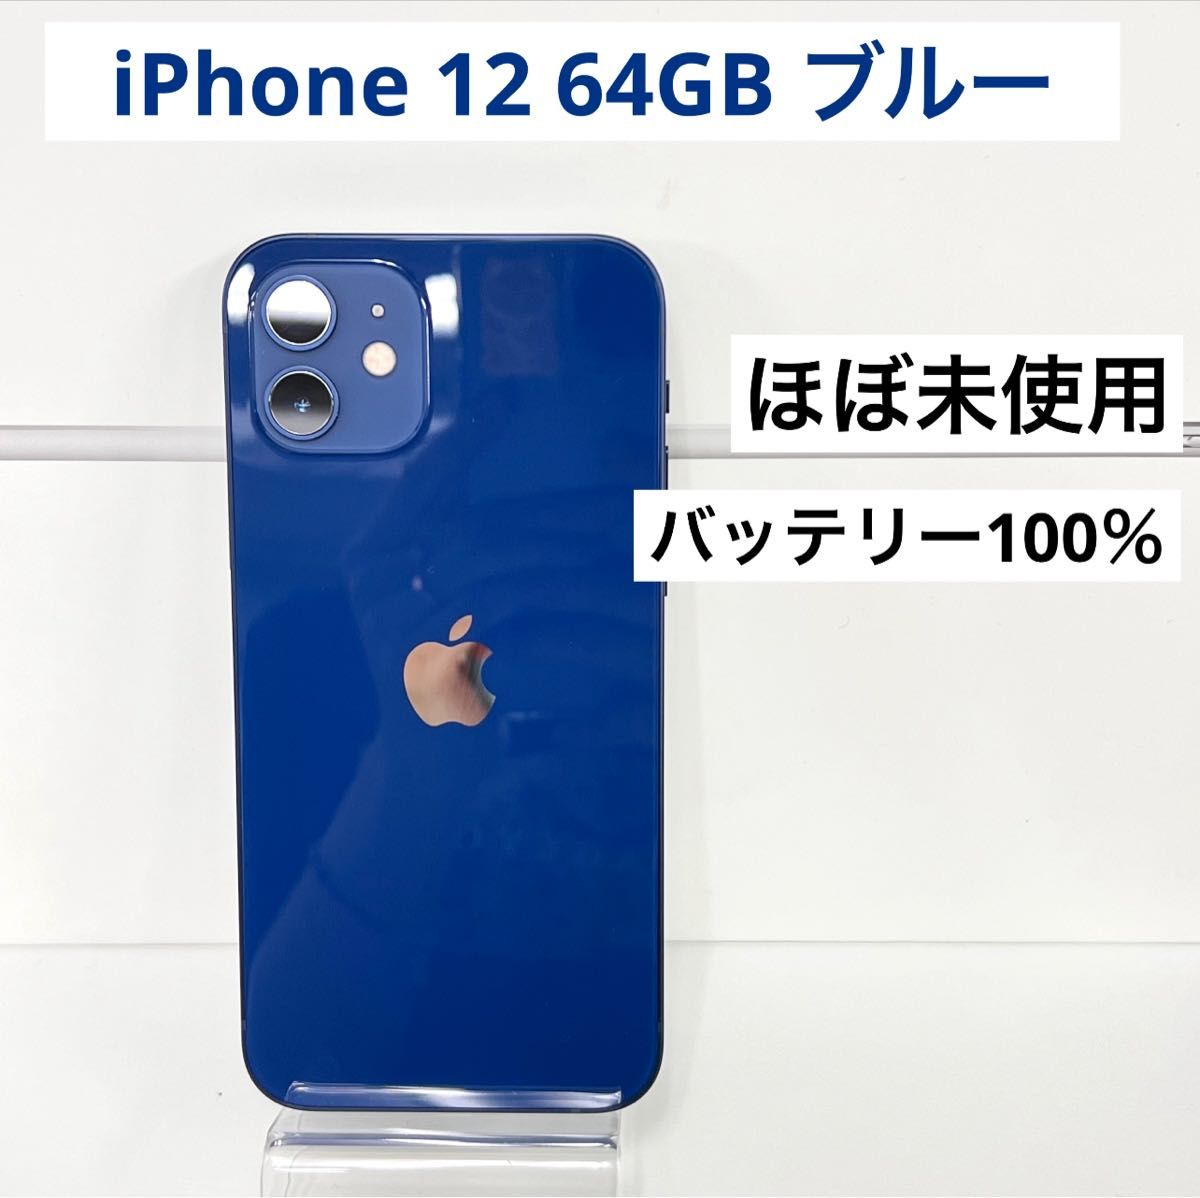 「ほぼ未使用」Apple iPhone 12 64GB ブルー ソフトバンクデモ機